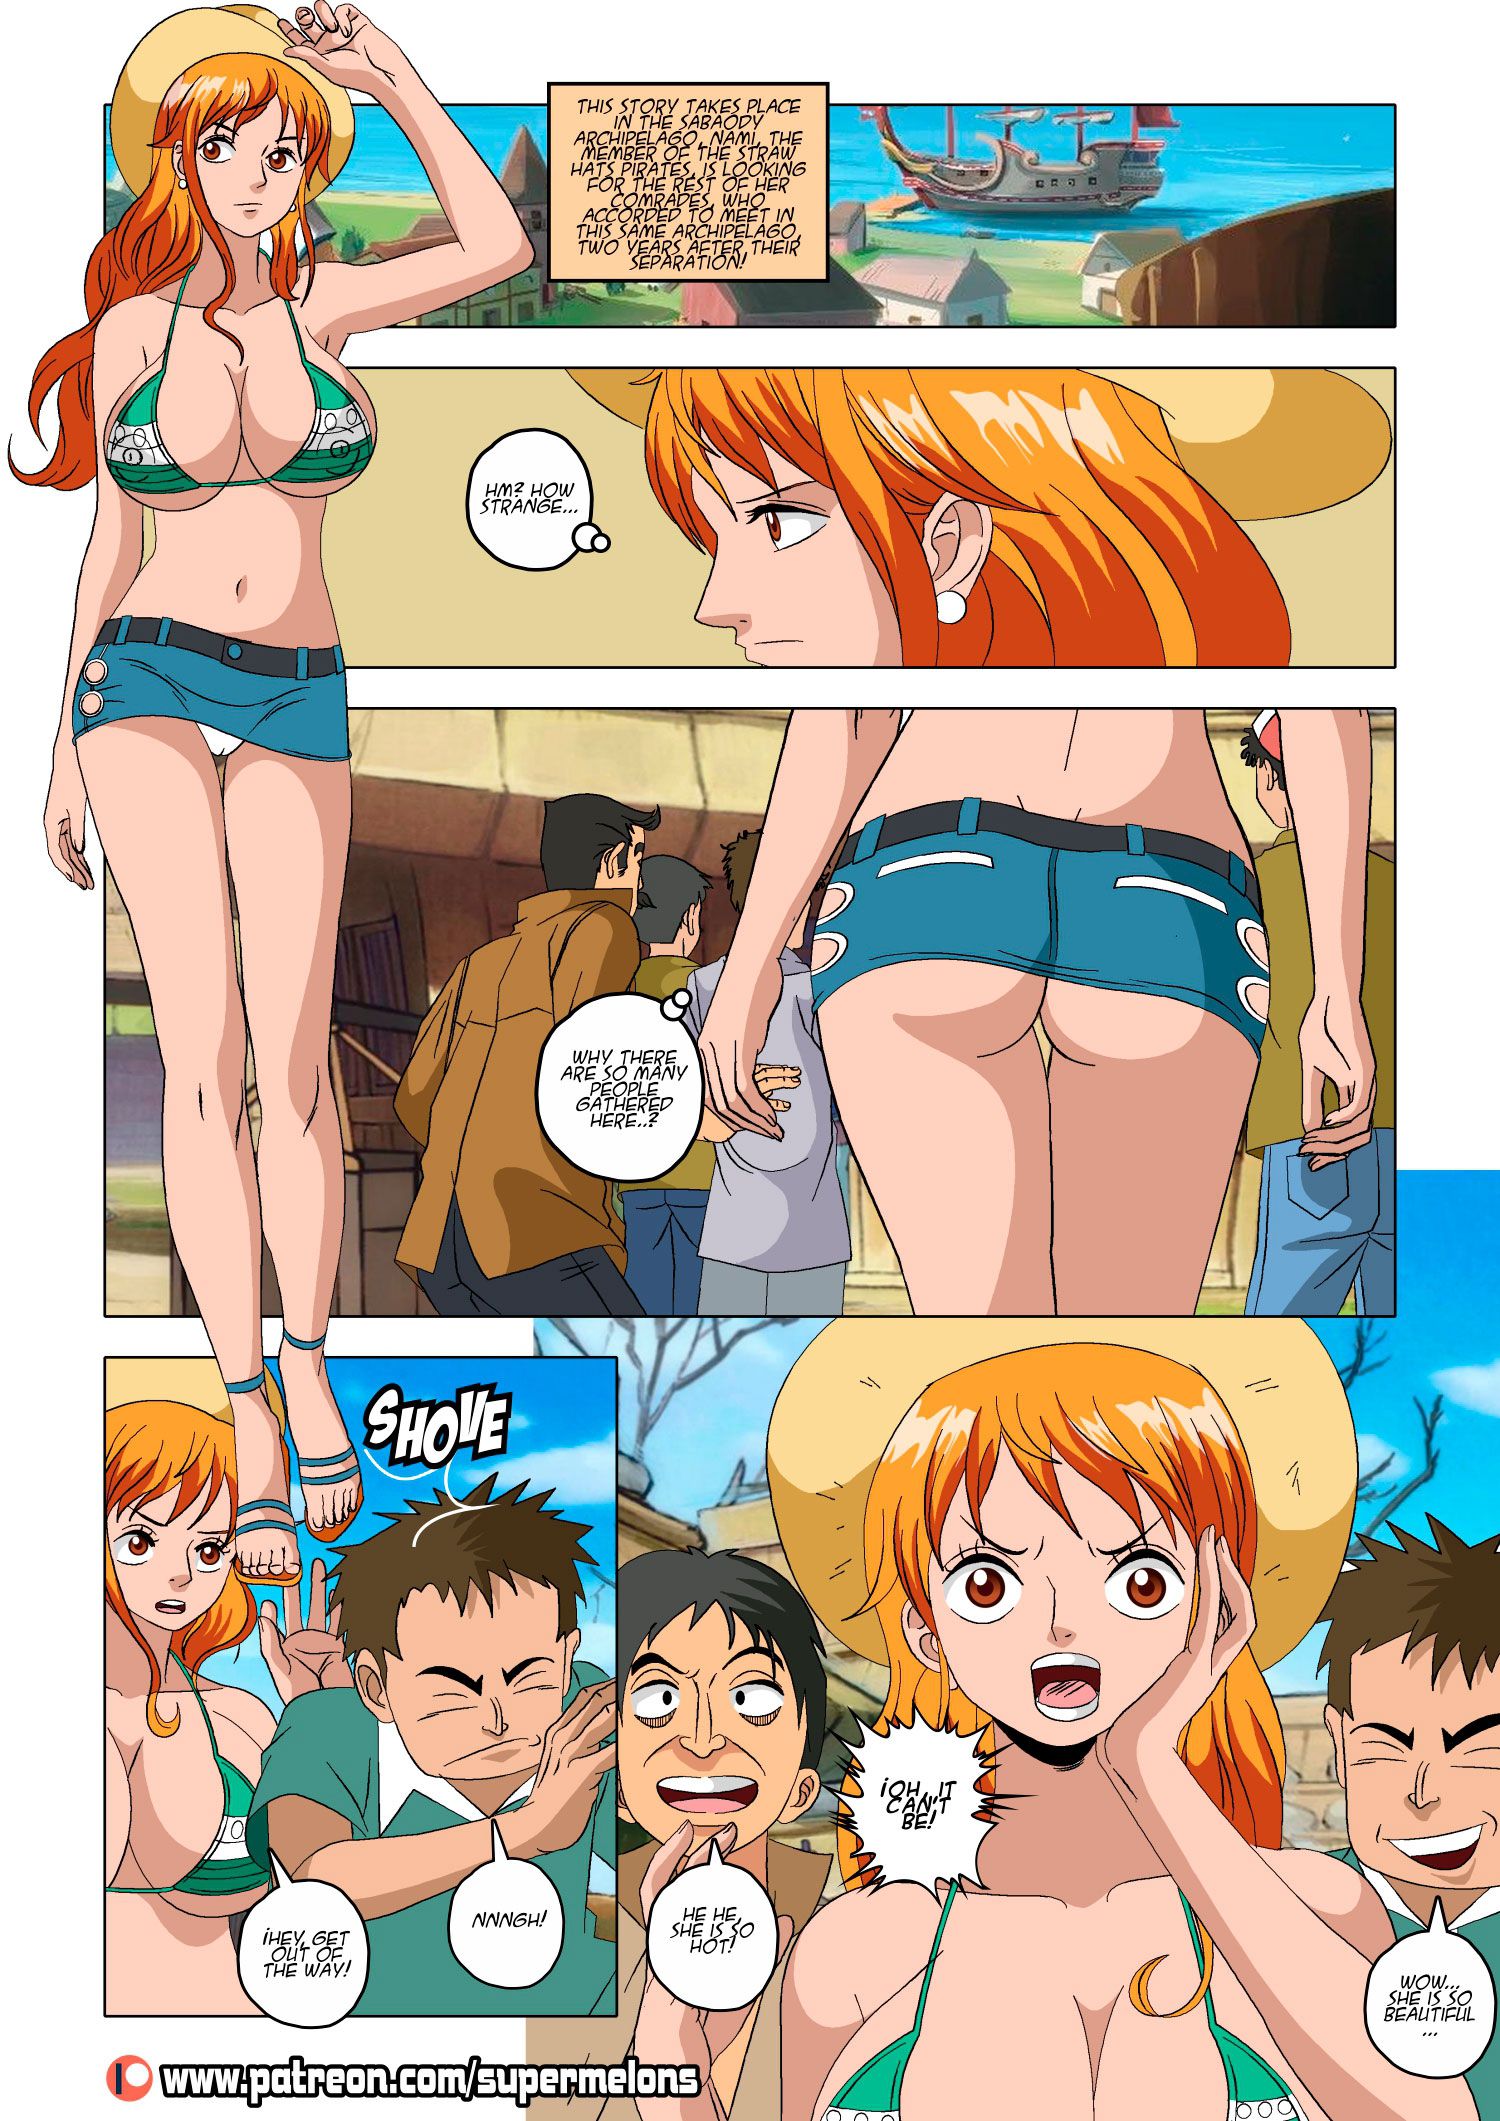 Nami's Escape (One Piece) [Super Melons] - Porn Cartoon Comics